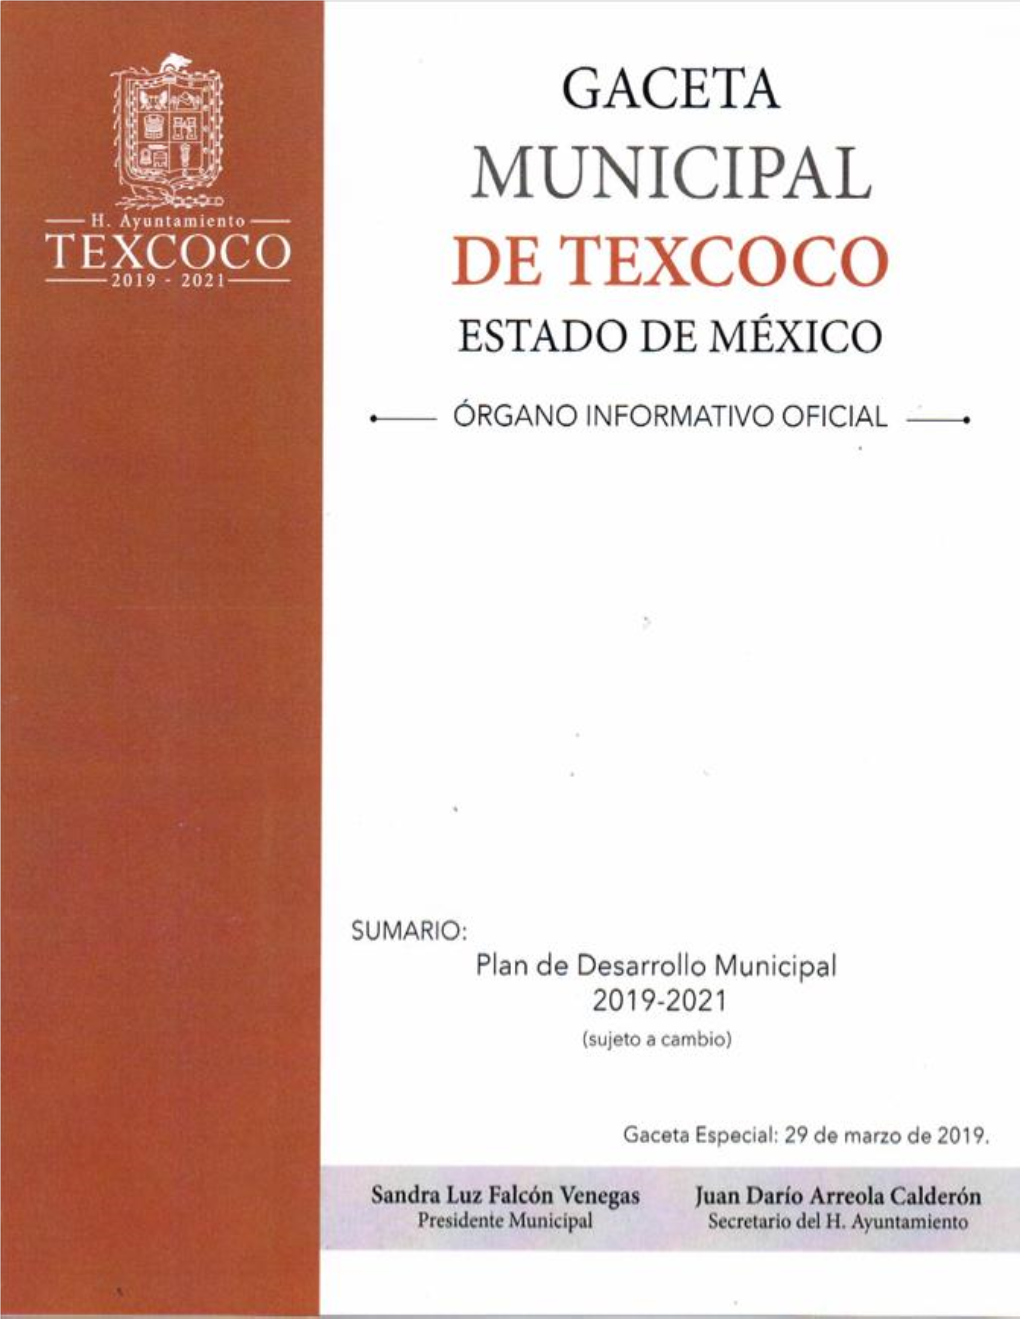 Plan De Desarrollo Municipal 2019 – 2021